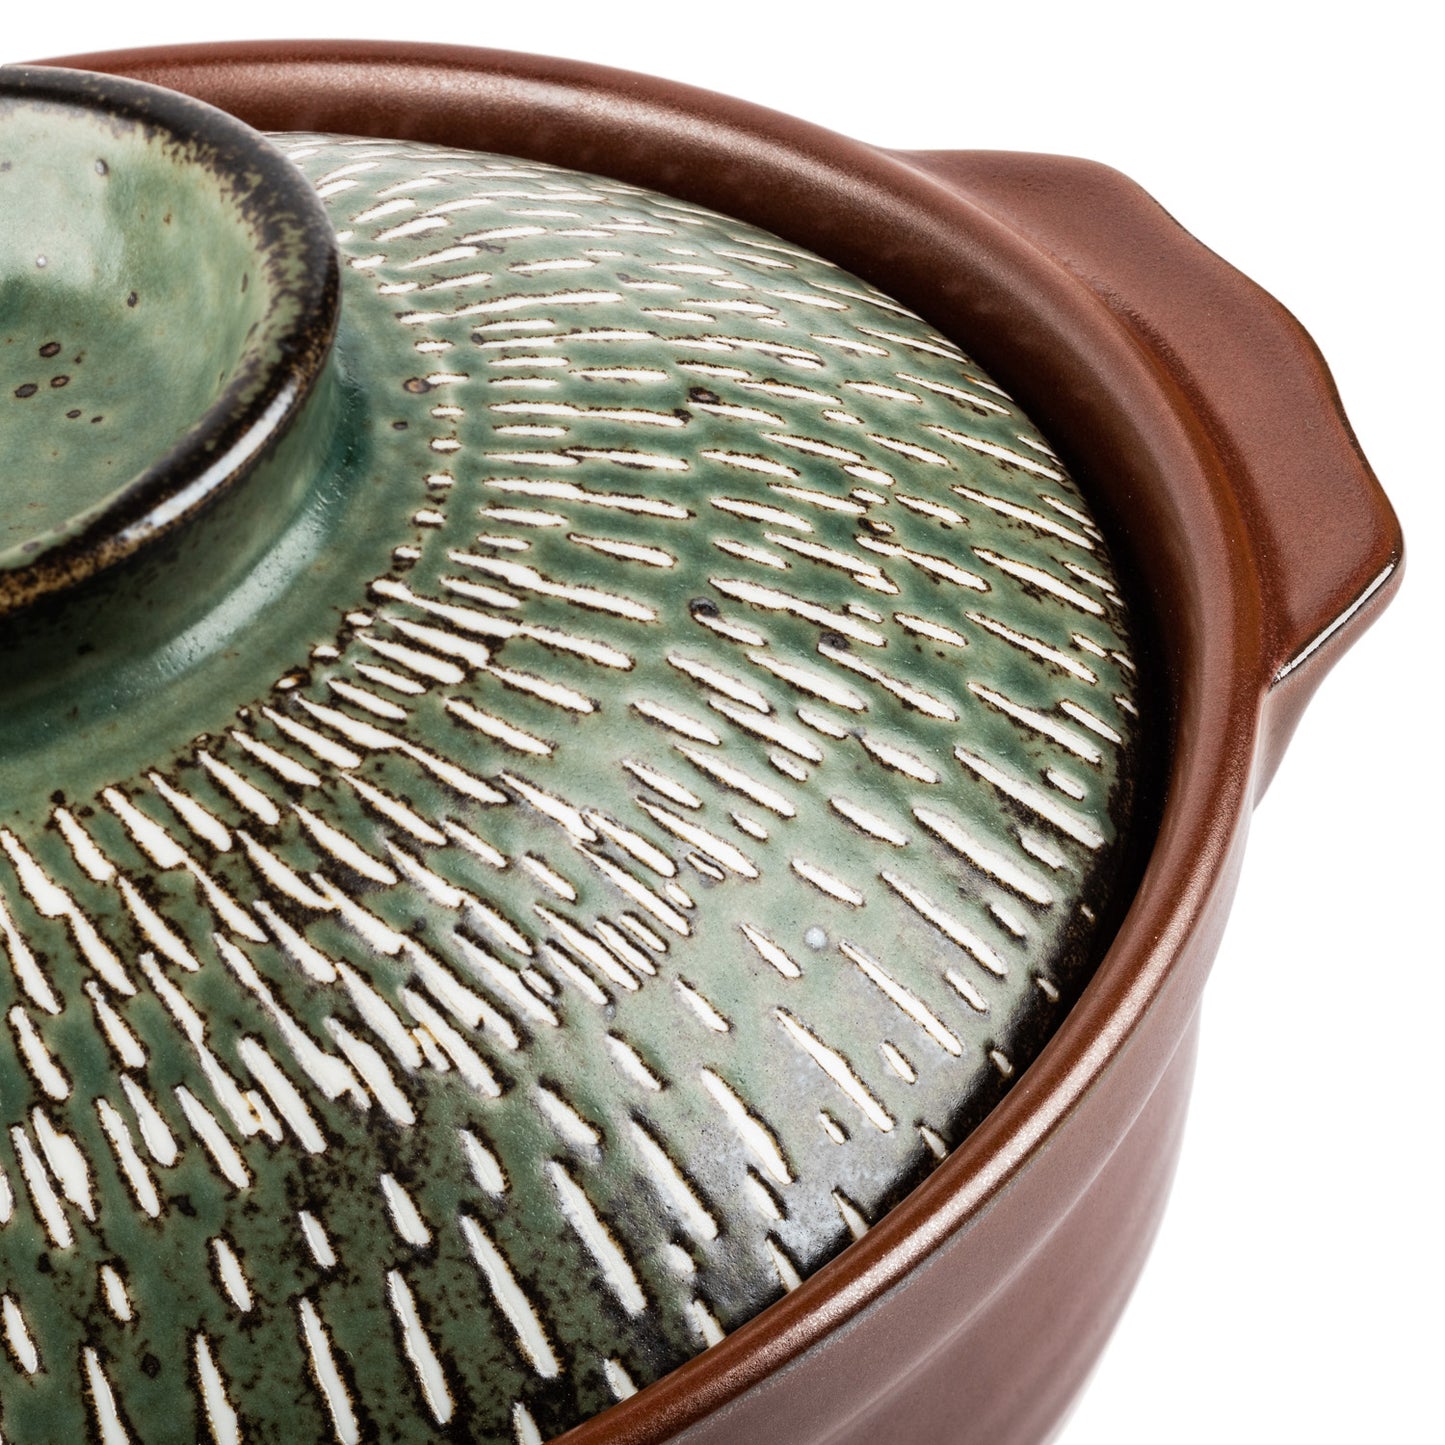 Uguisu Traditional Japanese Donabe Pot